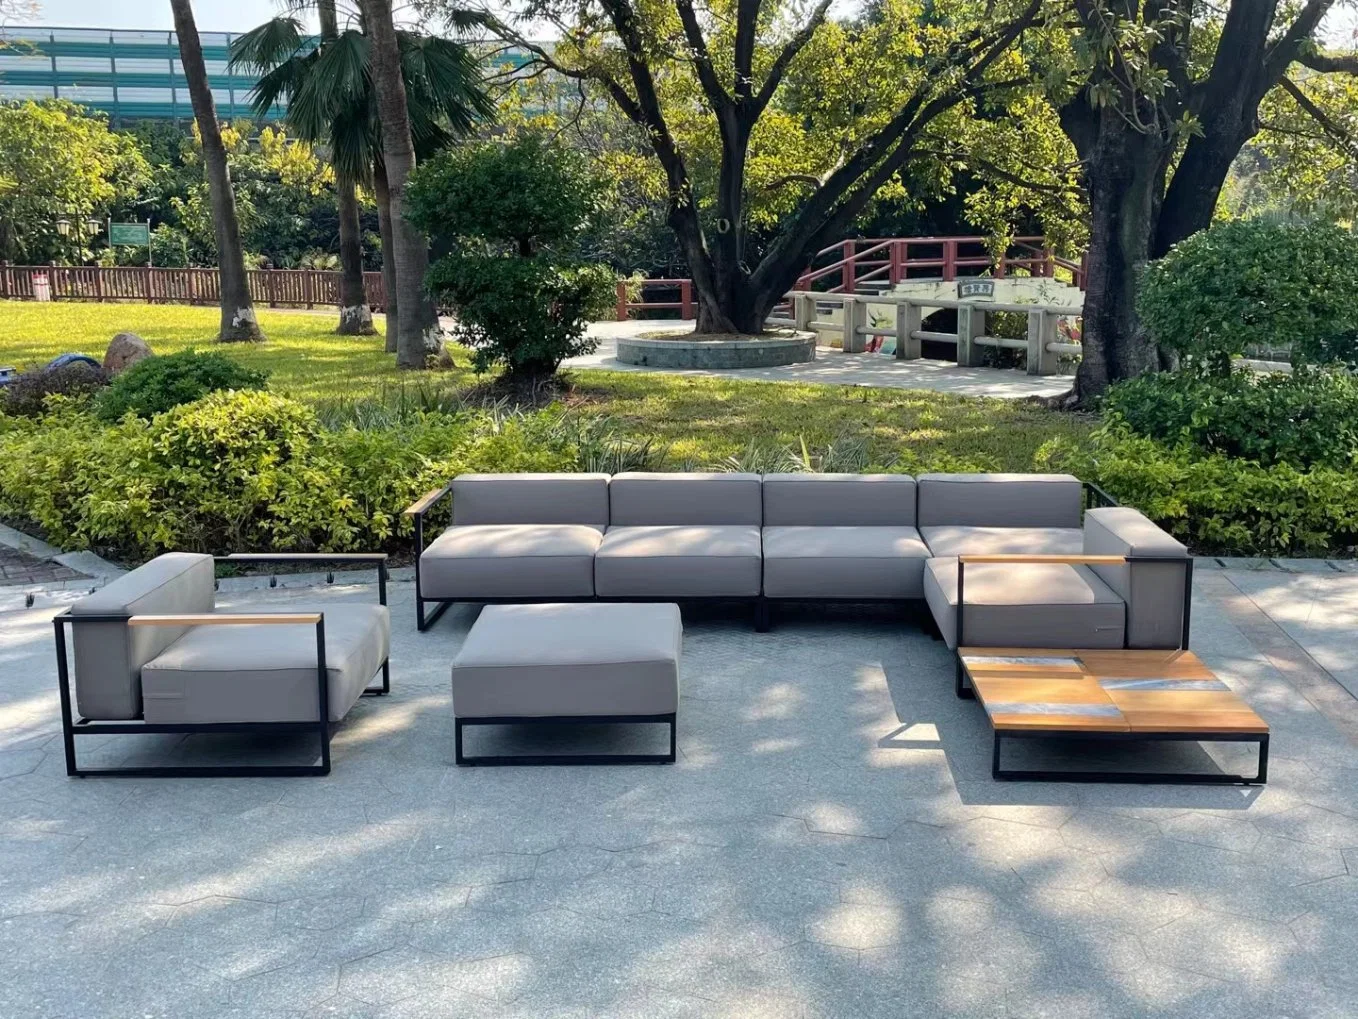 حديقة هوت سواي باتيو تصميم حديث أثاث خارجي خشبي صلب أريكة مصنوعة من خشب الساج